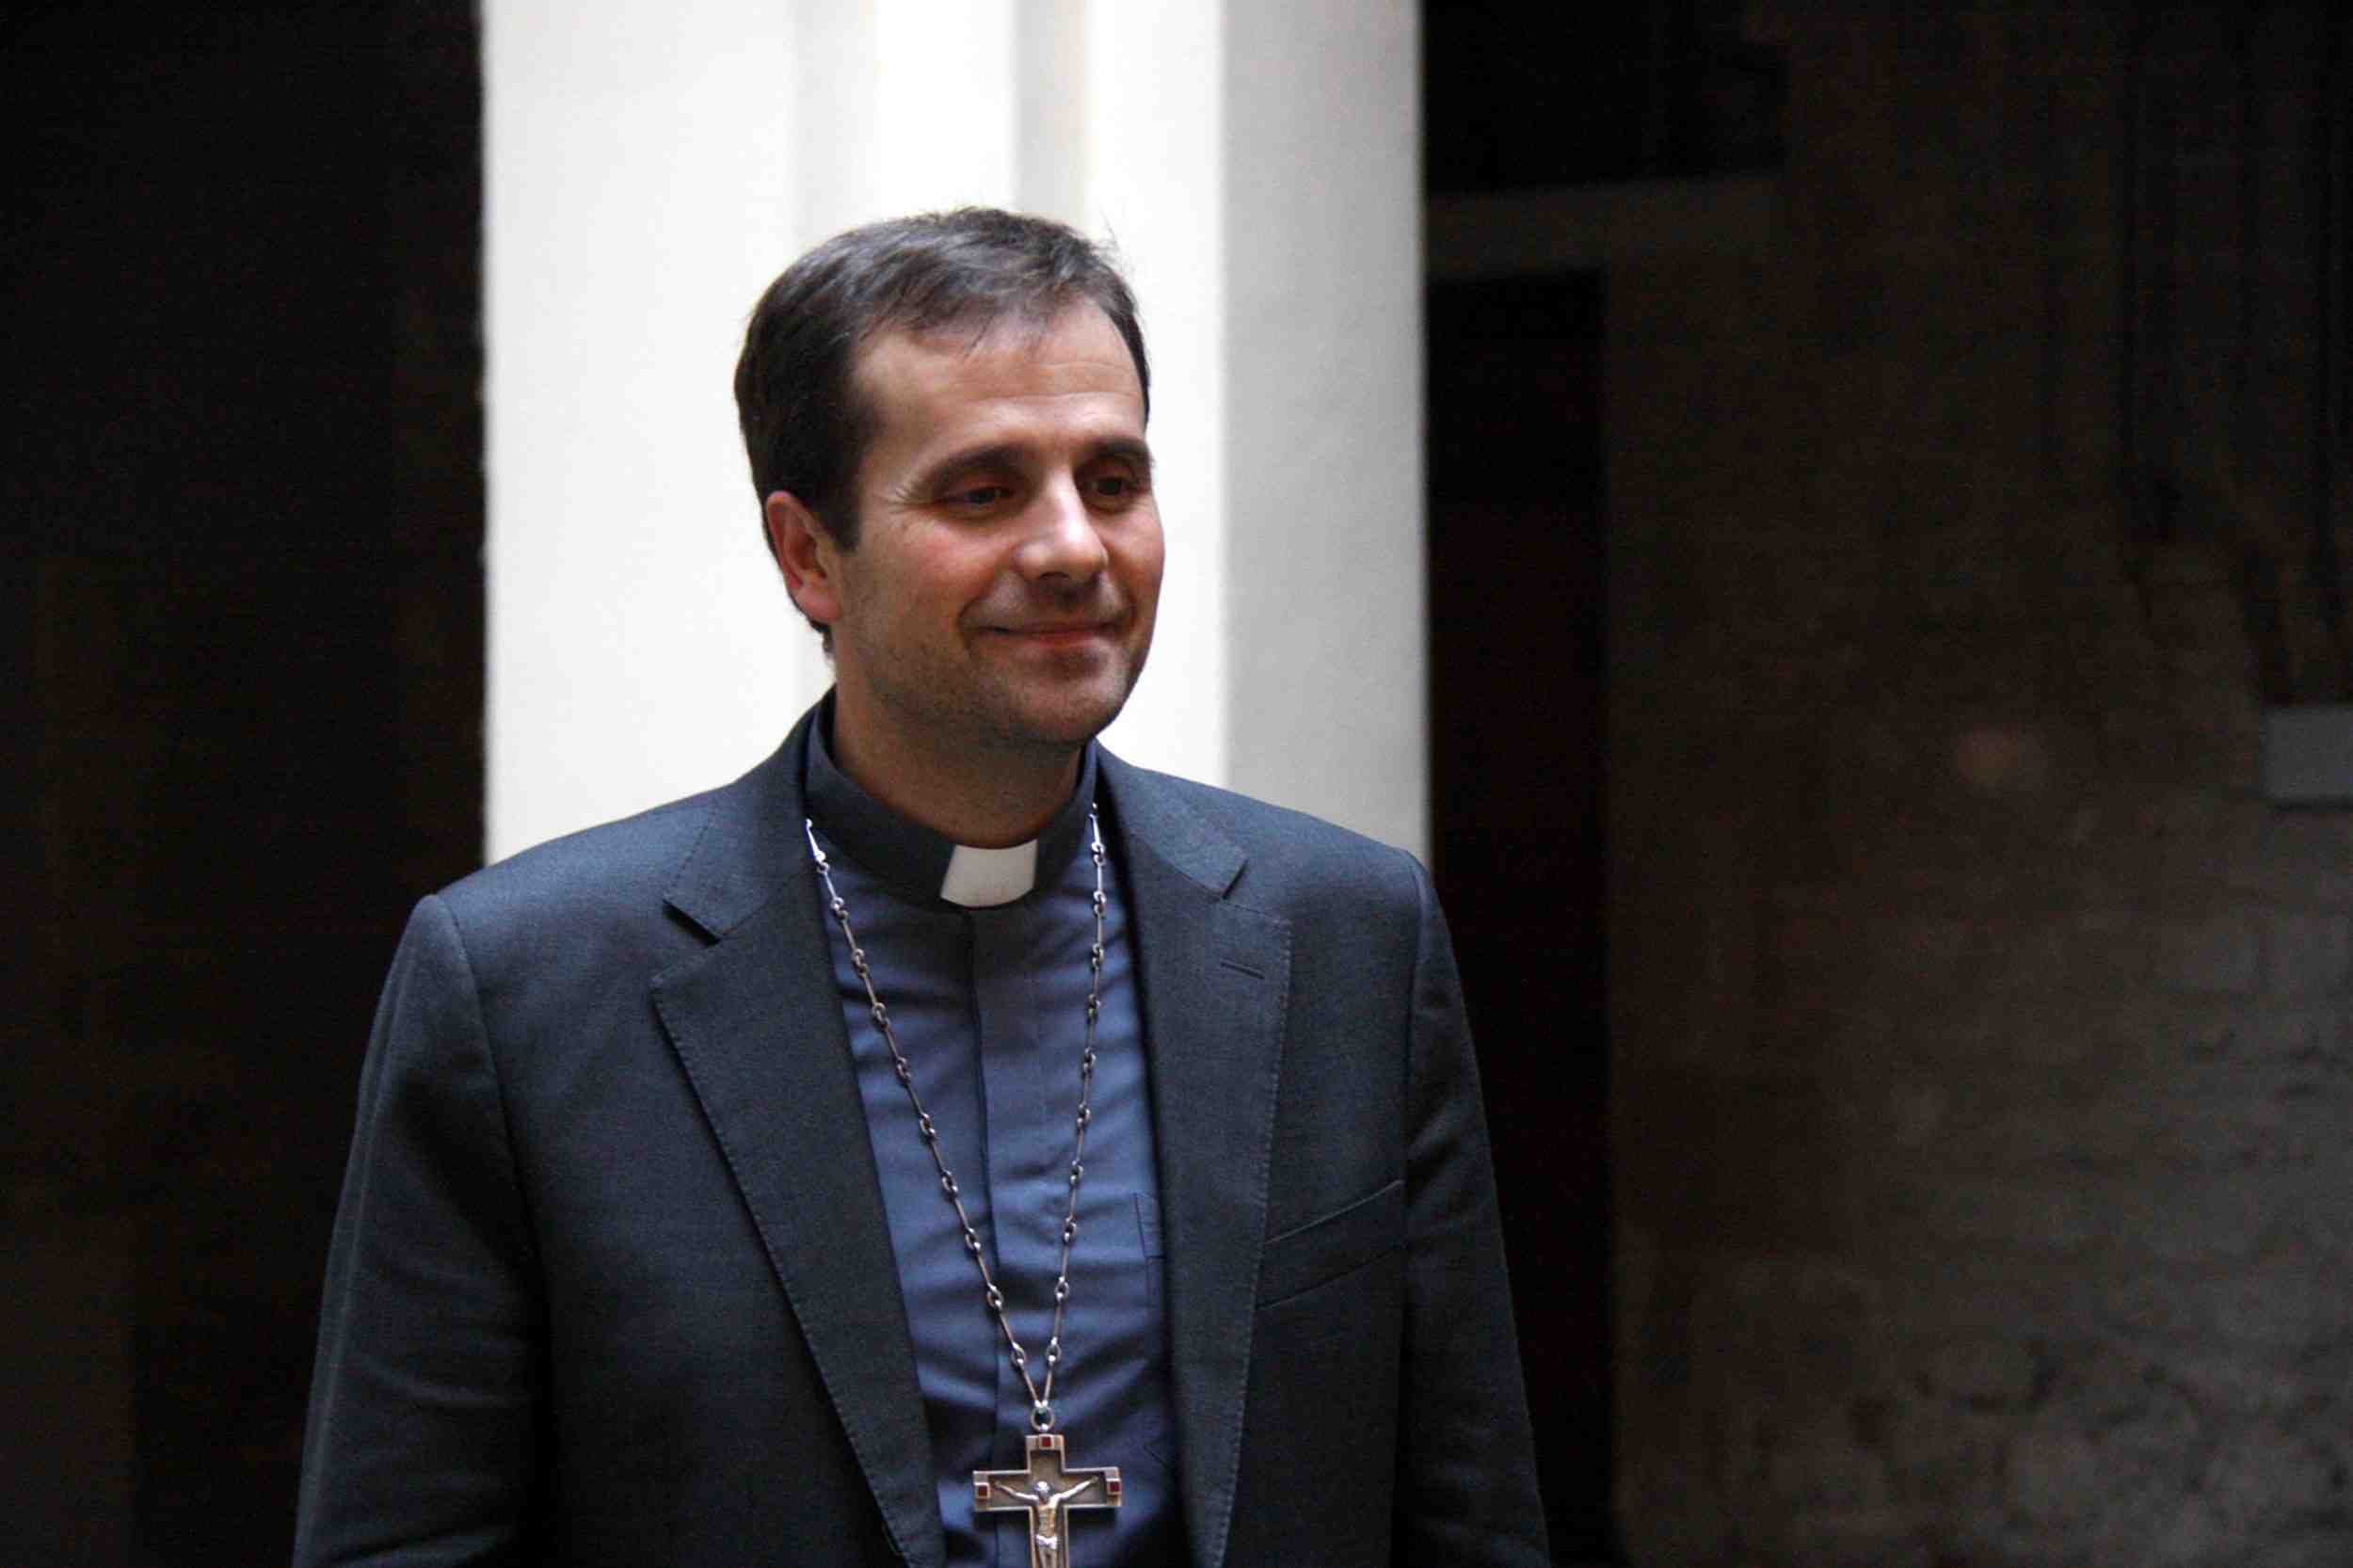 El obispo de Solsona avisa de que si la iglesia no cambia sólo oficiará funerales